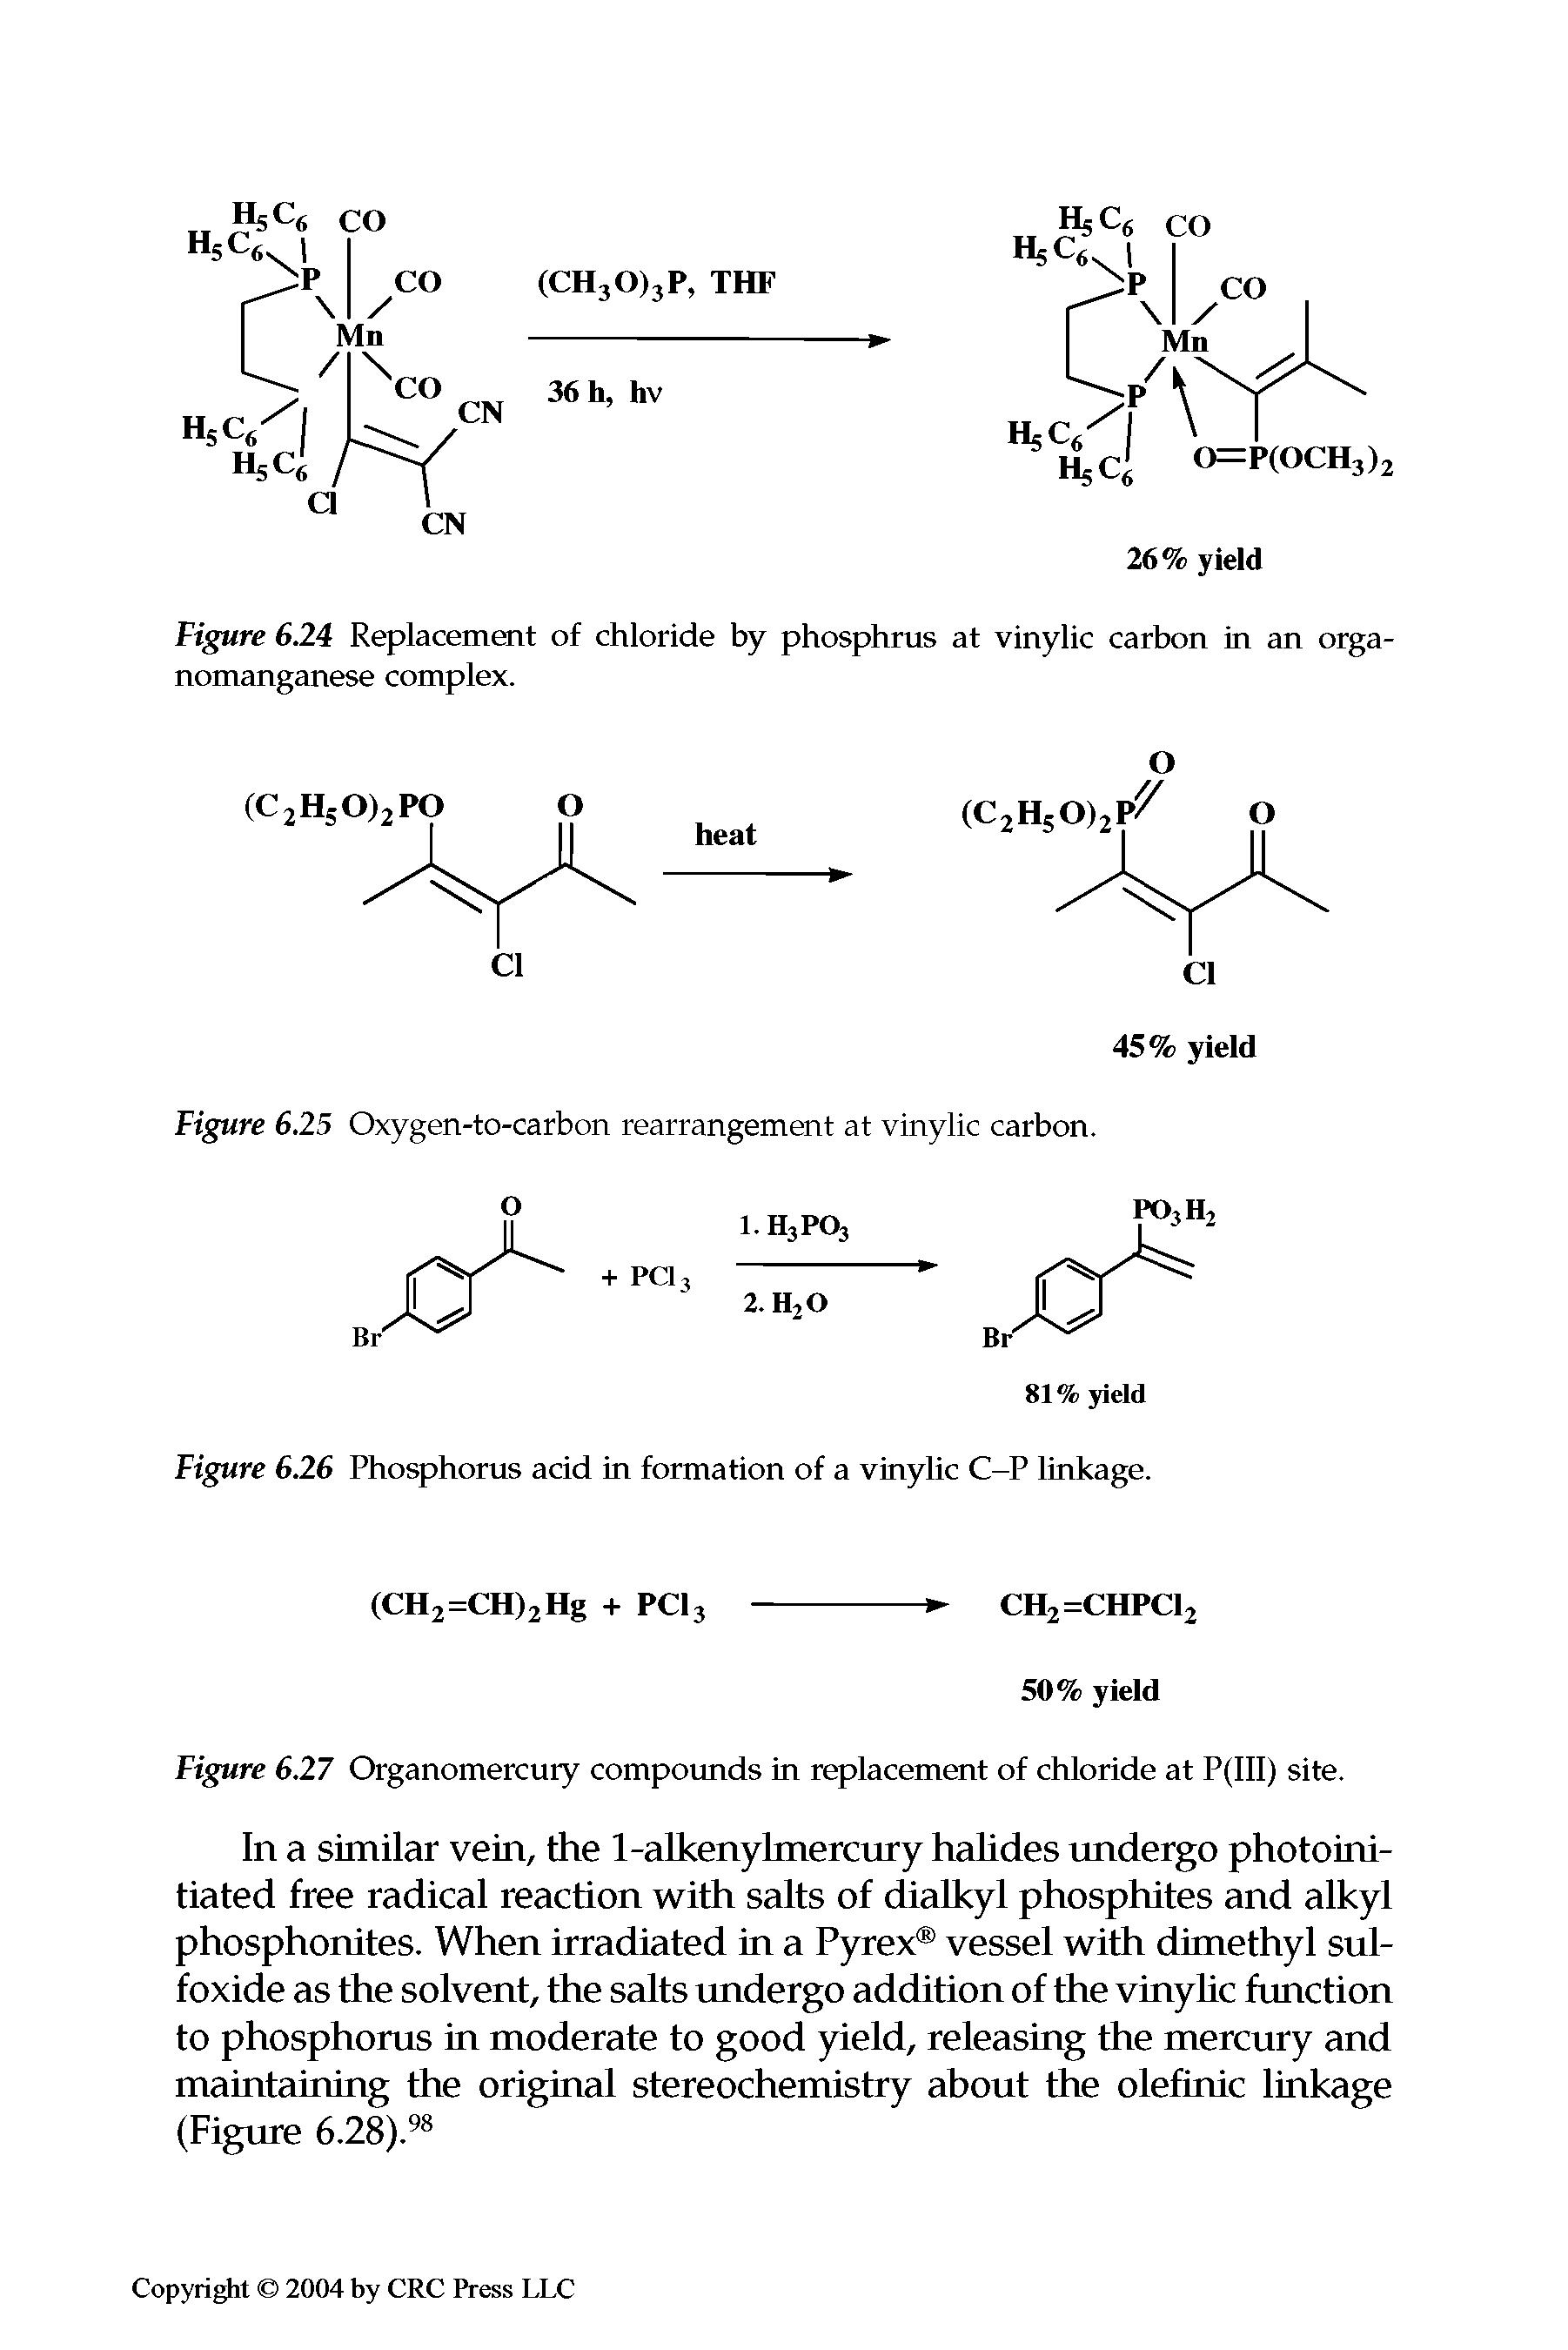 Figure 6.25 Oxygen-to-carbon rearrangement at vinylic carbon.